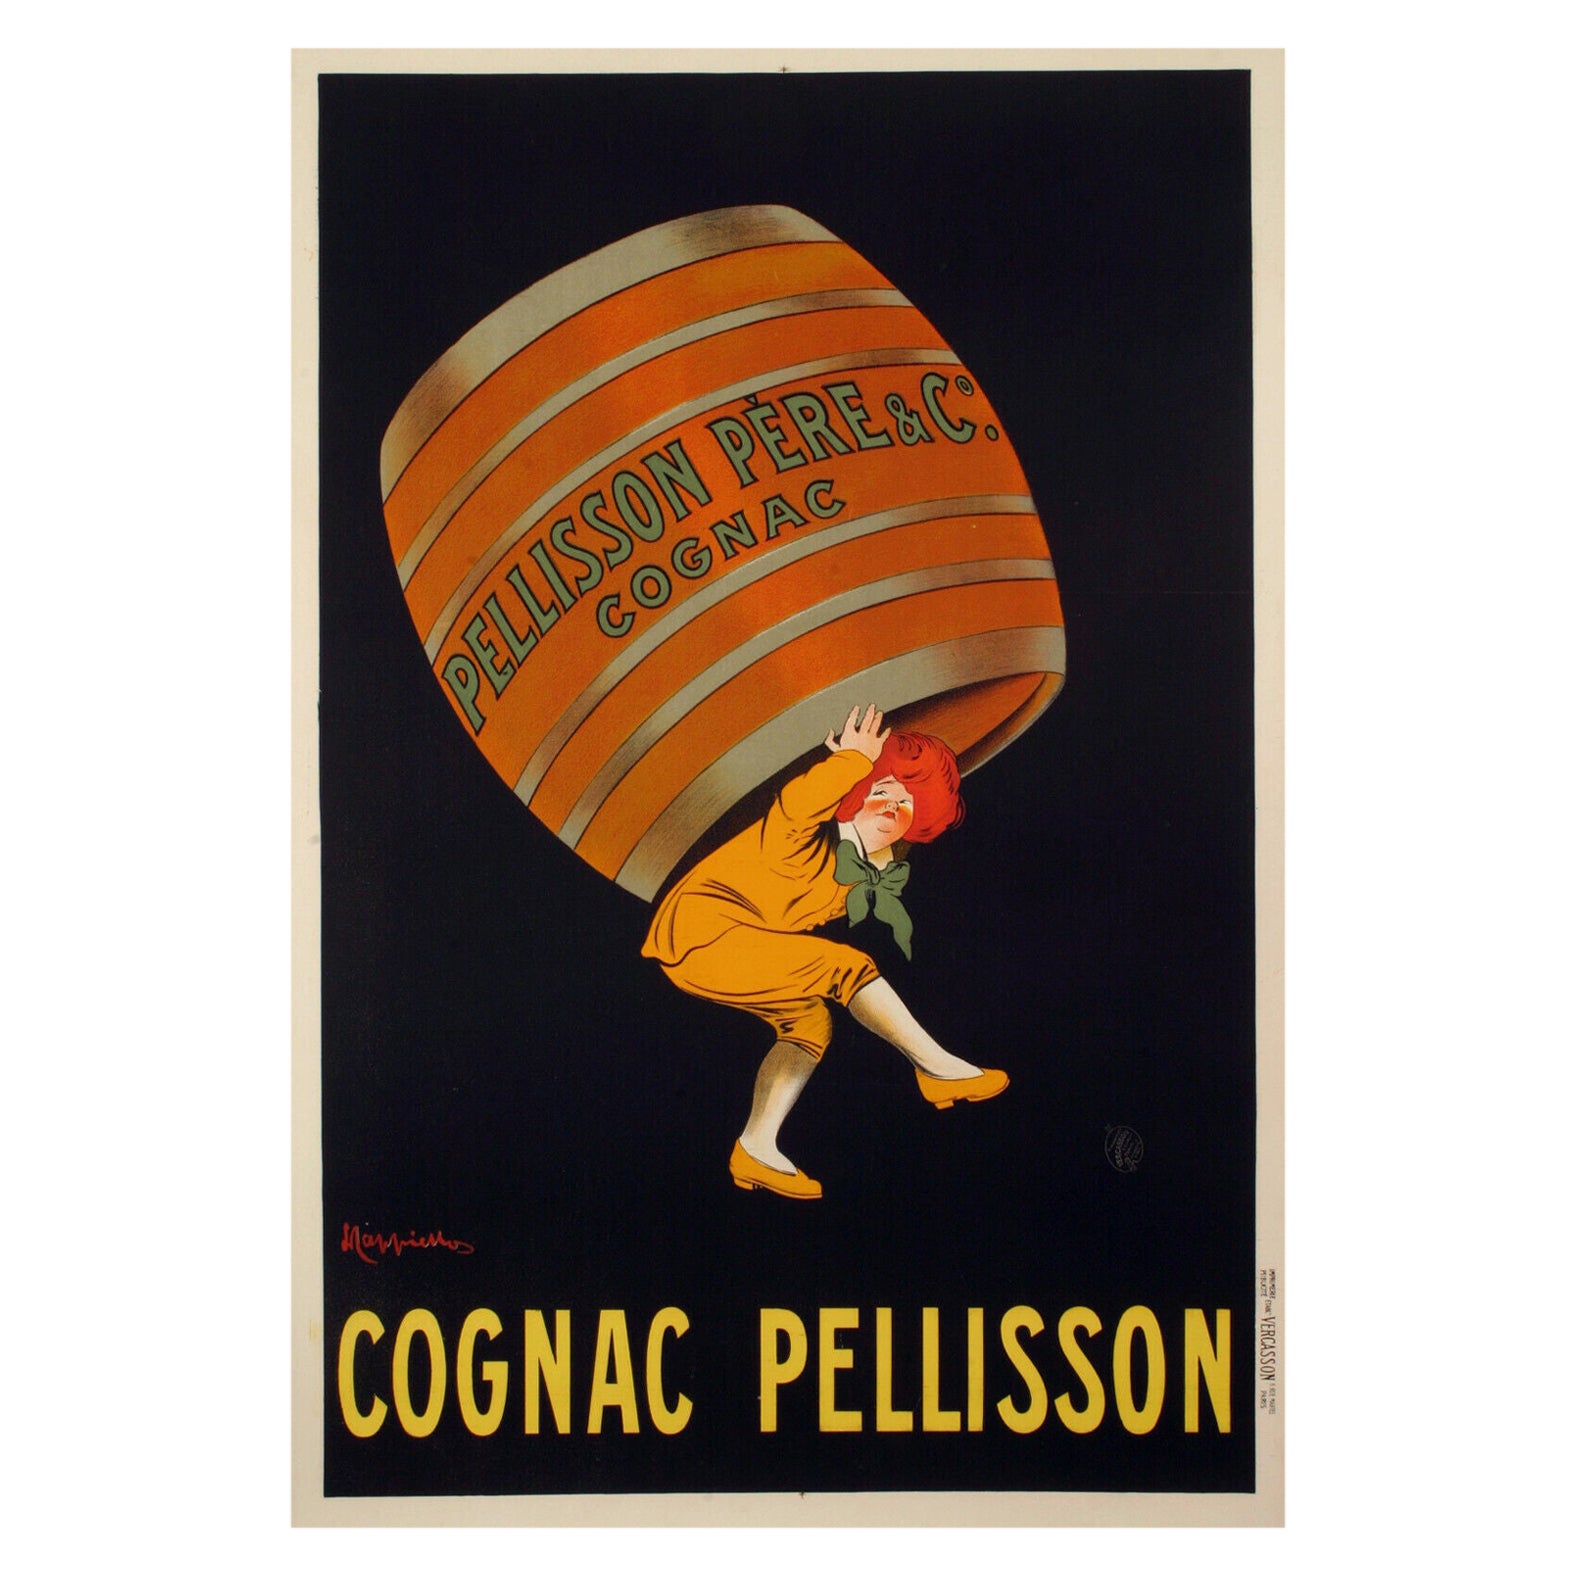 Originales Vintage-Alcoholplakat von Leonetto Cappiello, Cognac, Pellisson, 1907